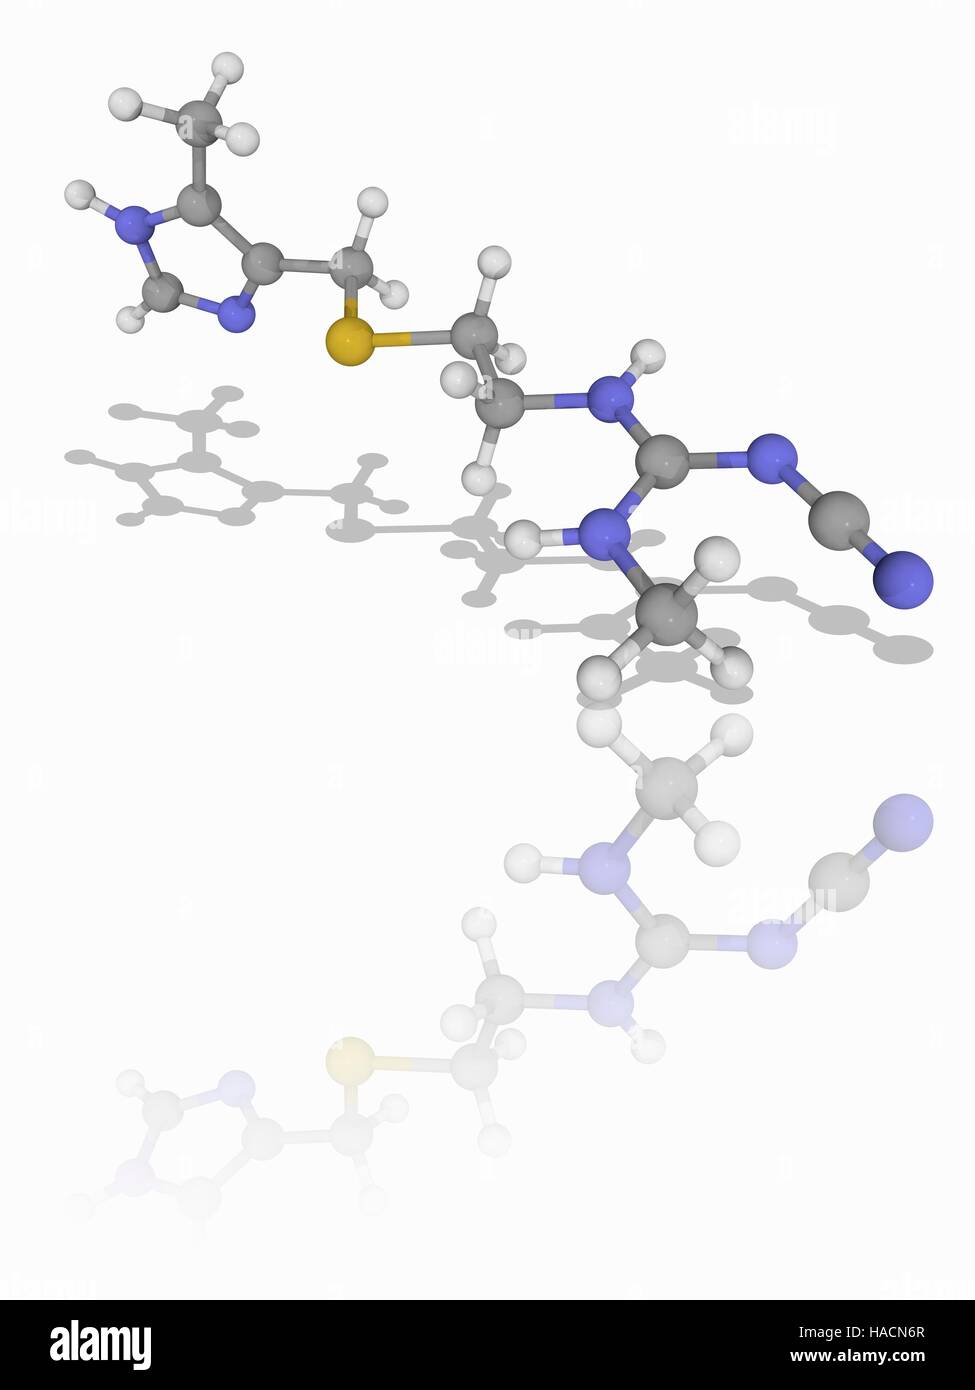 Cimetidin. Molekulares Modell des Medikaments Cimetidin (C10. H16. N6. (S), zur Behandlung von Sodbrennen und peptischen Ulzera. Es ist ein Histamin-H2-Rezeptor-Antagonisten hemmen die Produktion von Säure im Magen. Atome als Kugeln dargestellt werden und sind farblich gekennzeichnet: Kohlenstoff (grau), Wasserstoff (weiß), Stickstoff (blau) und Schwefel (gelb). Abbildung. Stockfoto